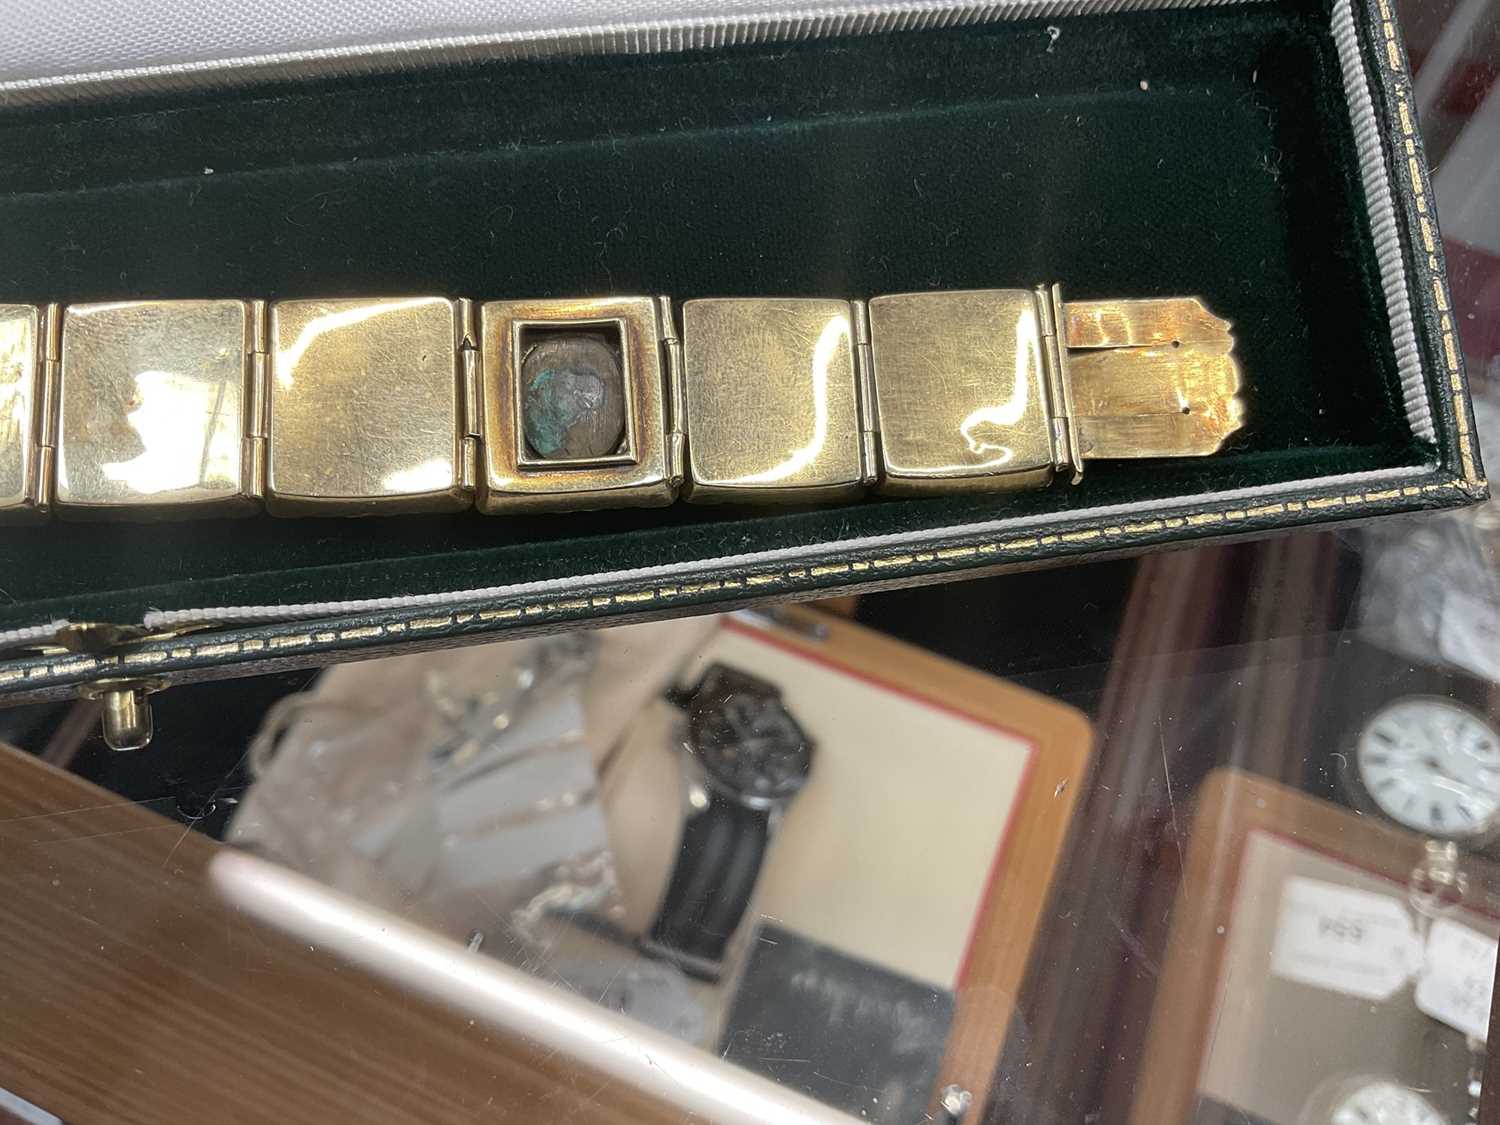 Regency/19th century gold and multi-gem set bracelet - Image 4 of 4